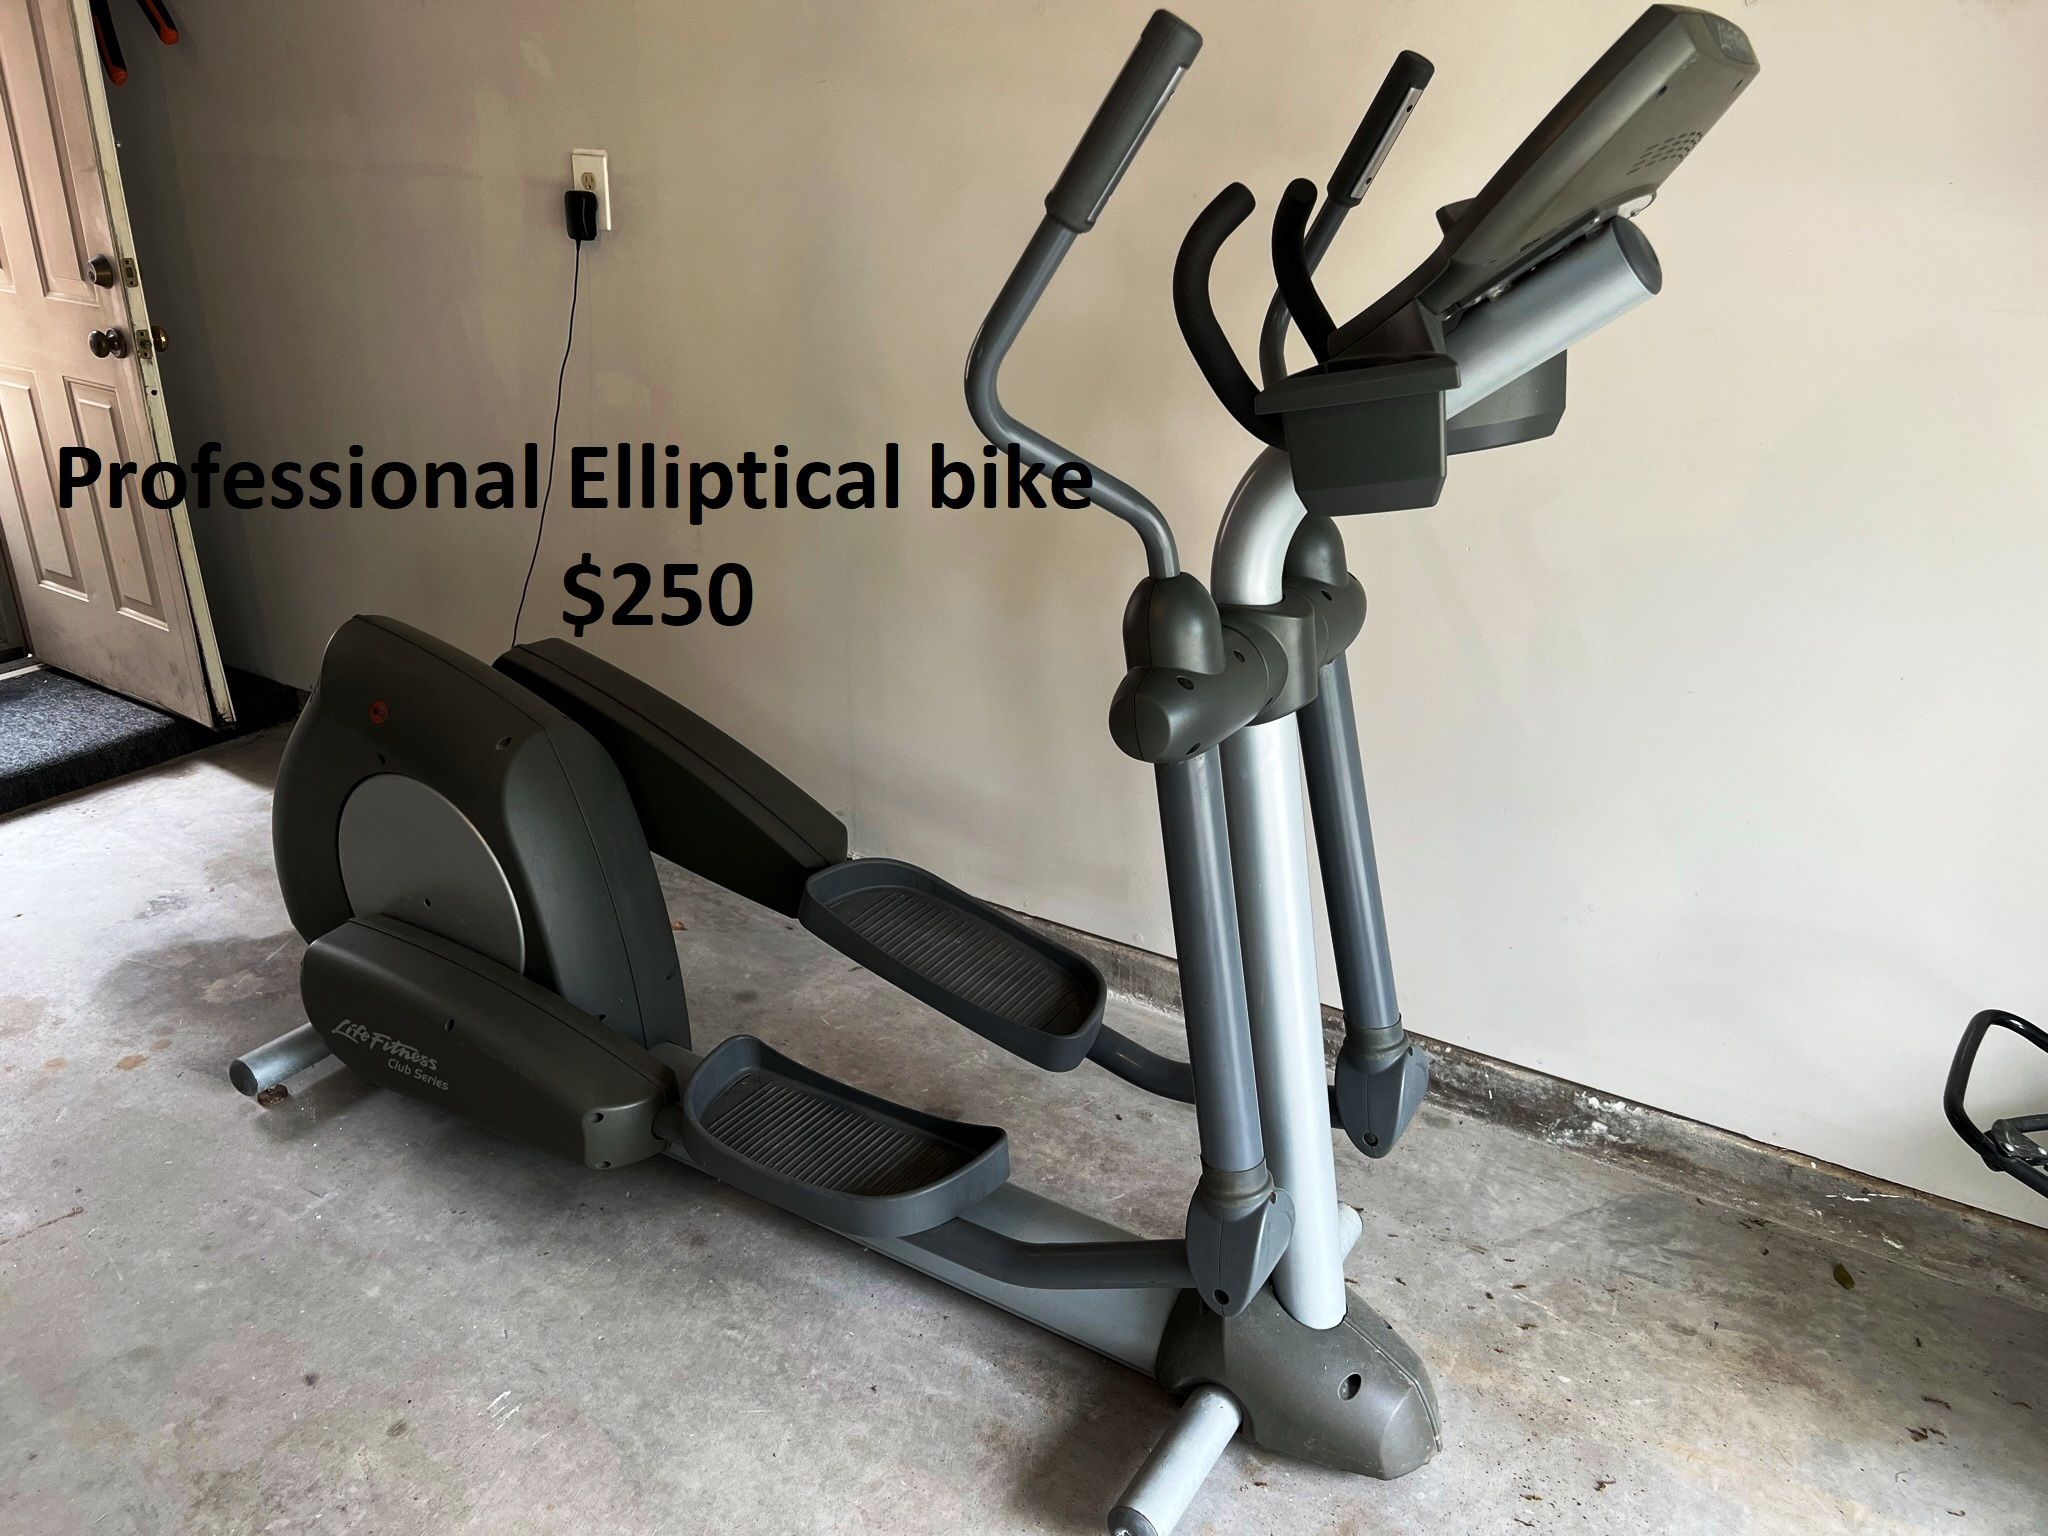 Professional Elliptical Bike - Life Fitness